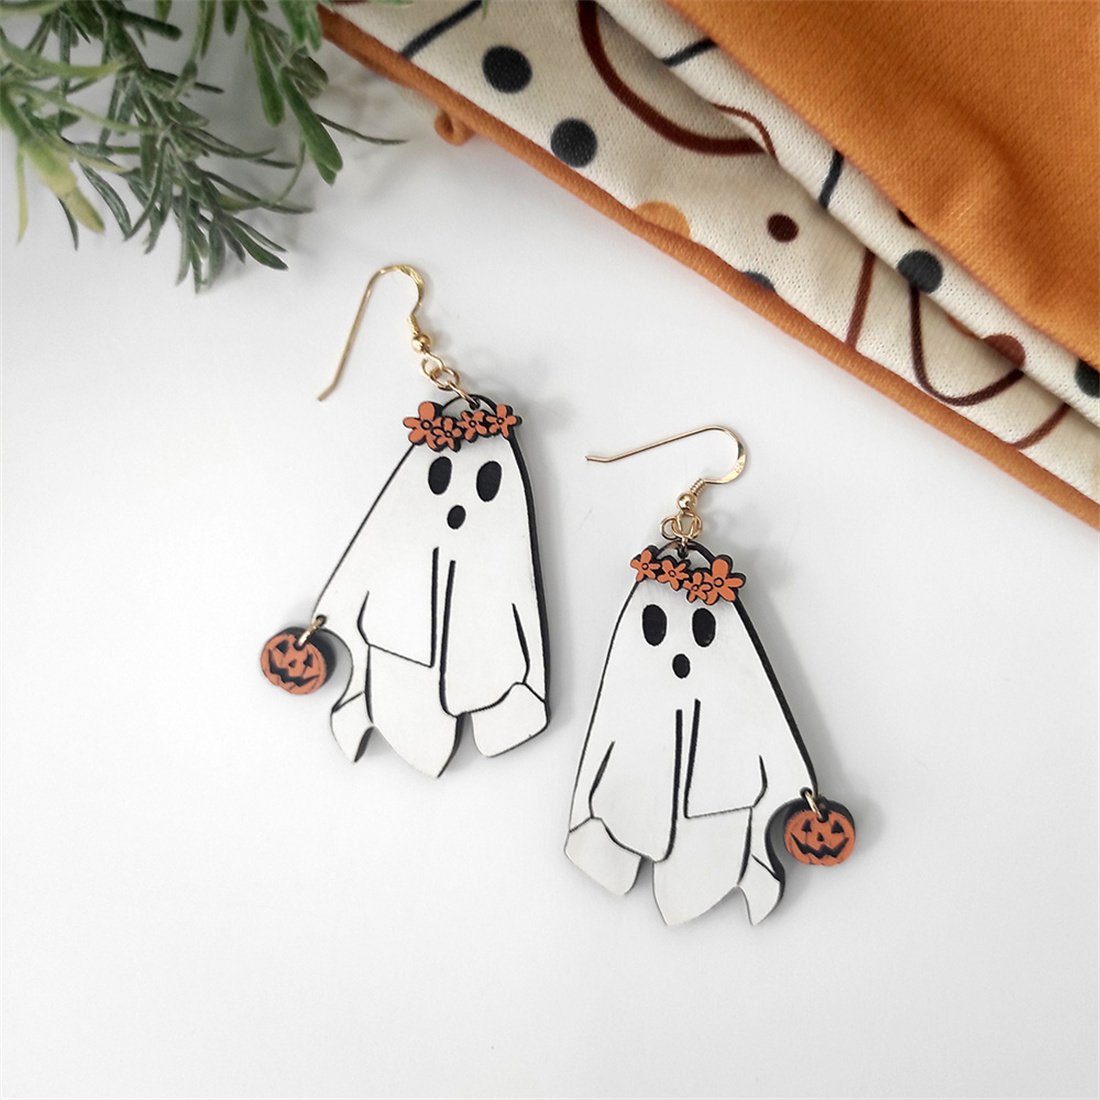 Spooky Halloween Spooky Ohrringe, Ohrschmuck Party Weiße Ohrhänger Ohrringe, DÖRÖY Paar